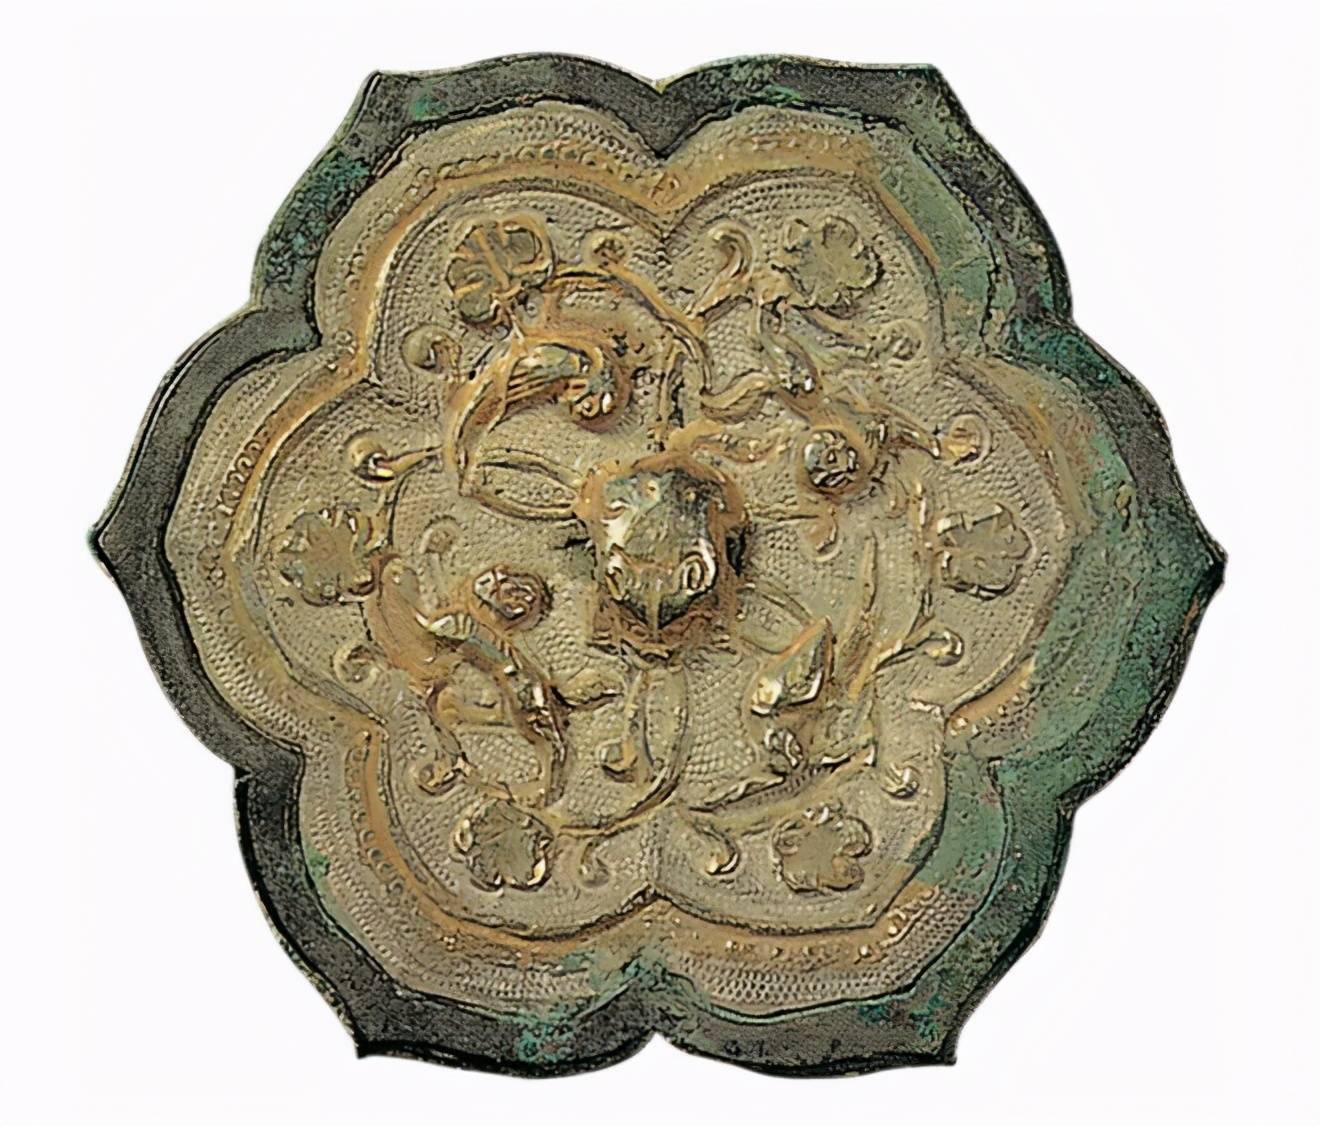 宋代铸造的唐镜:仿古和逐利下的宋代工艺美术个案